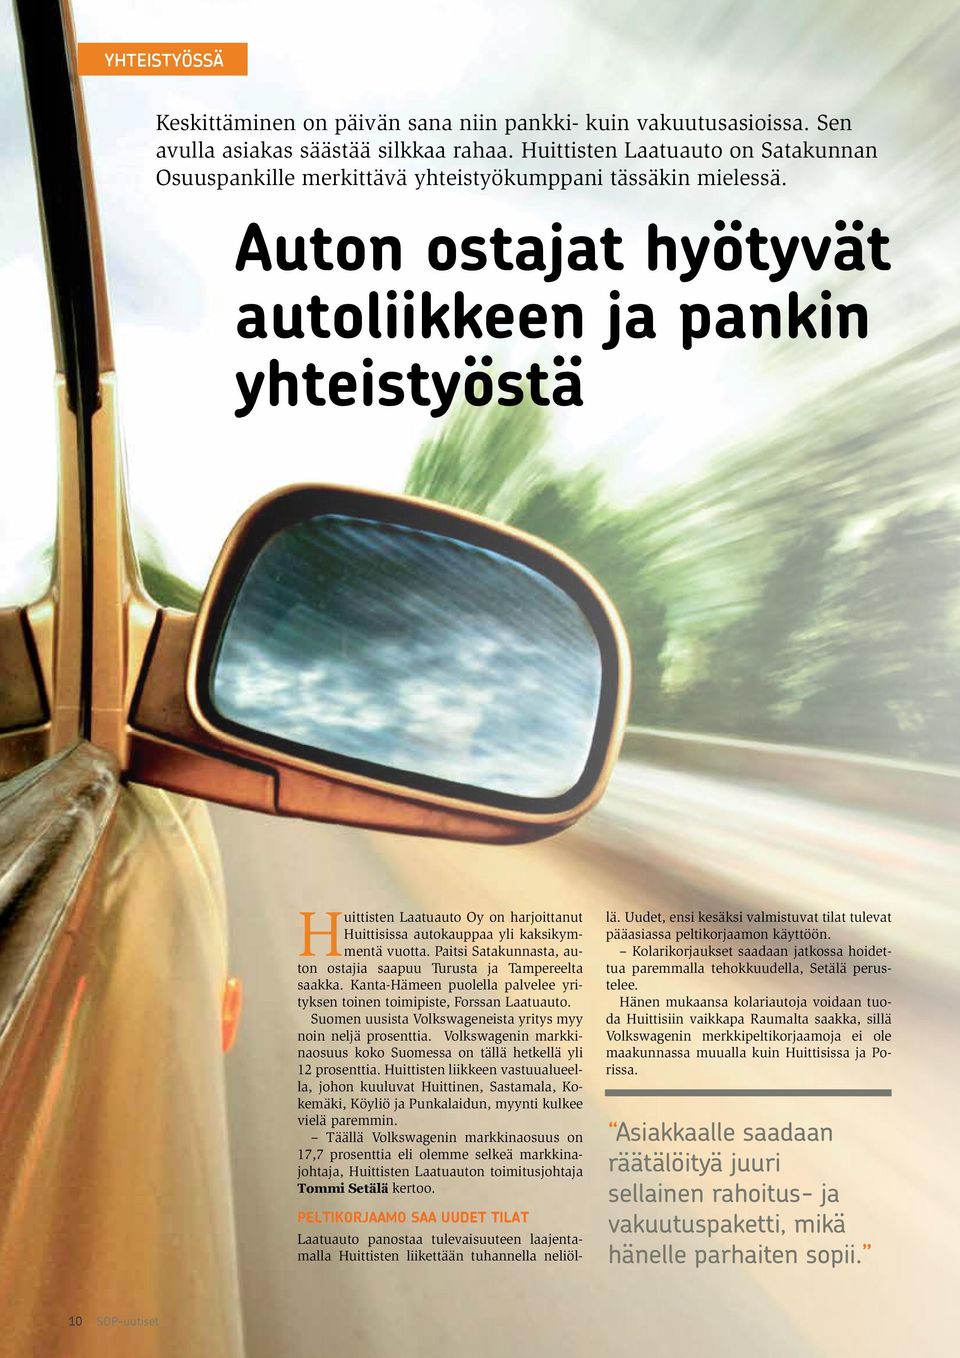 Auton ostajat hyötyvät autoliikkeen ja pankin yhteistyöstä Huittisten Laatuauto Oy on harjoittanut Huittisissa autokauppaa yli kaksikymmentä vuotta.